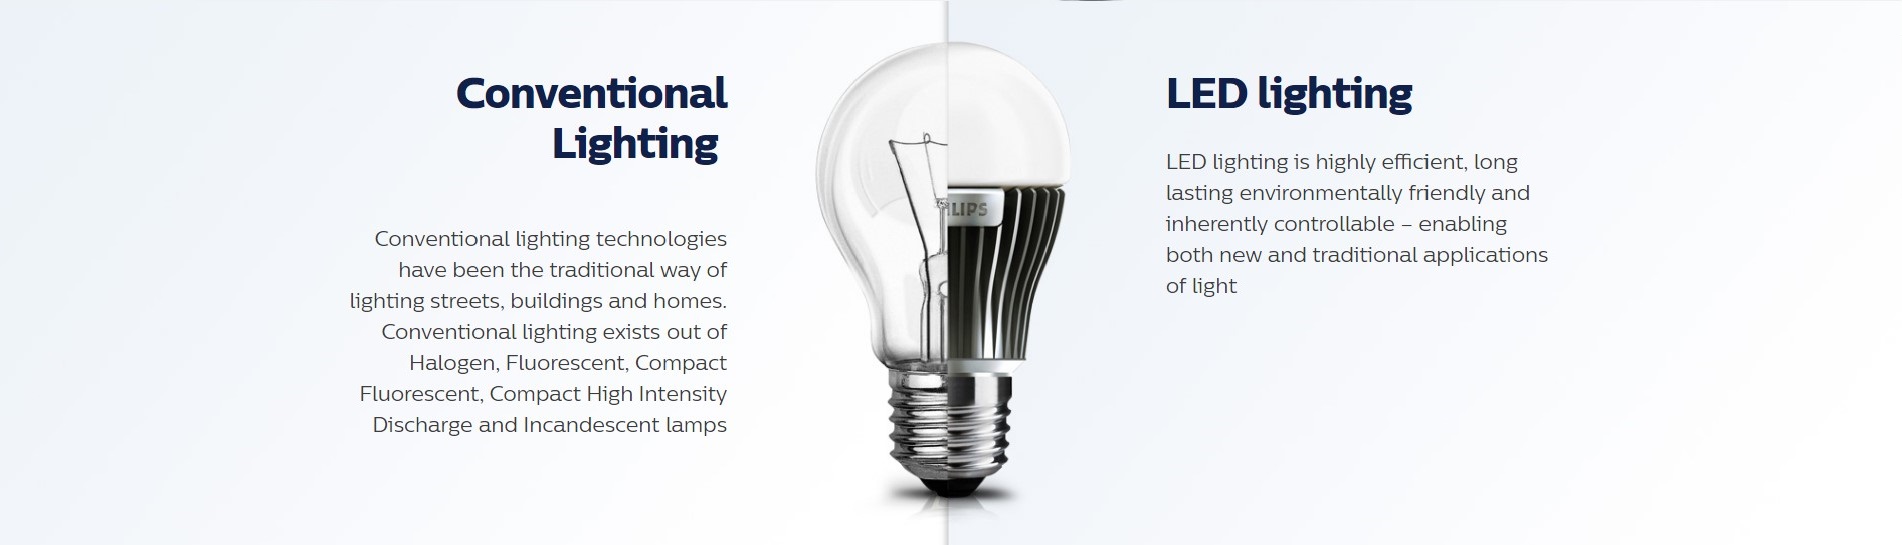 Philips LED Lighting Branding